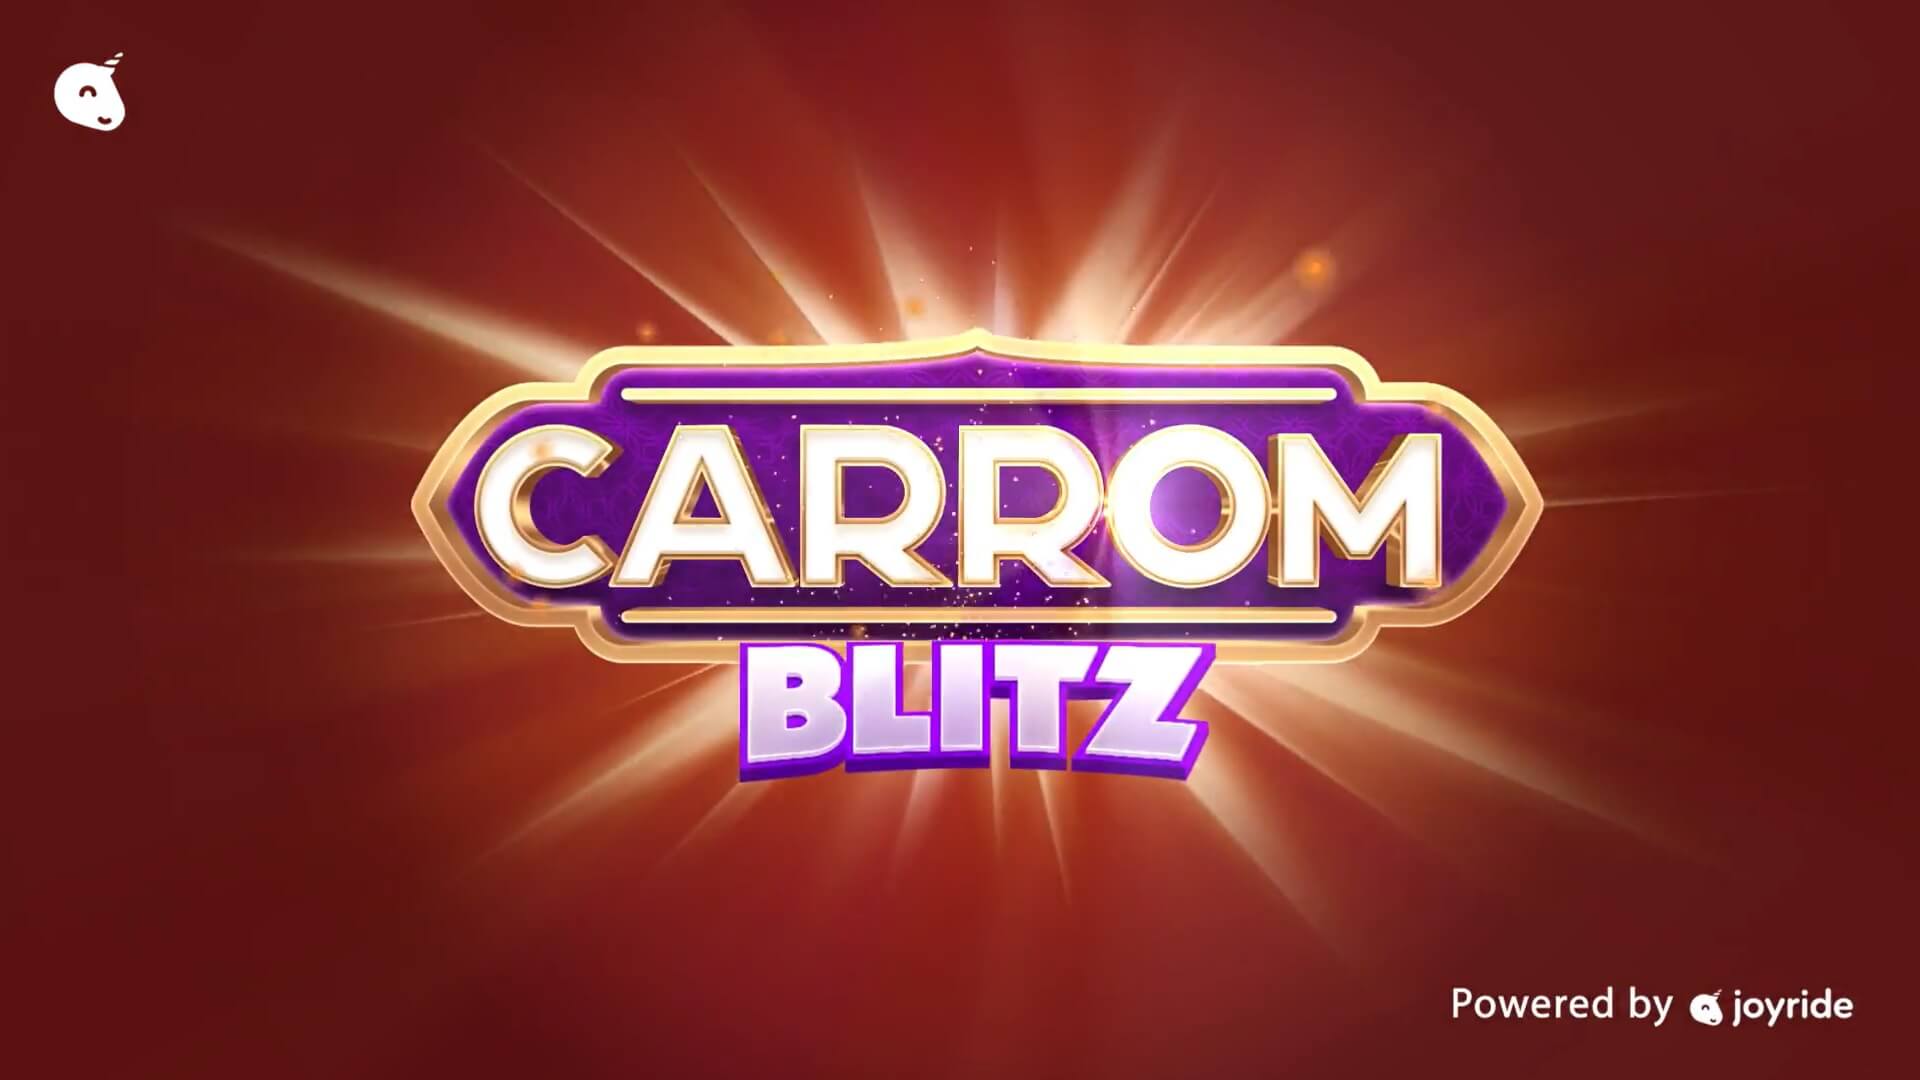 Carrom Blitz Blockchain Game